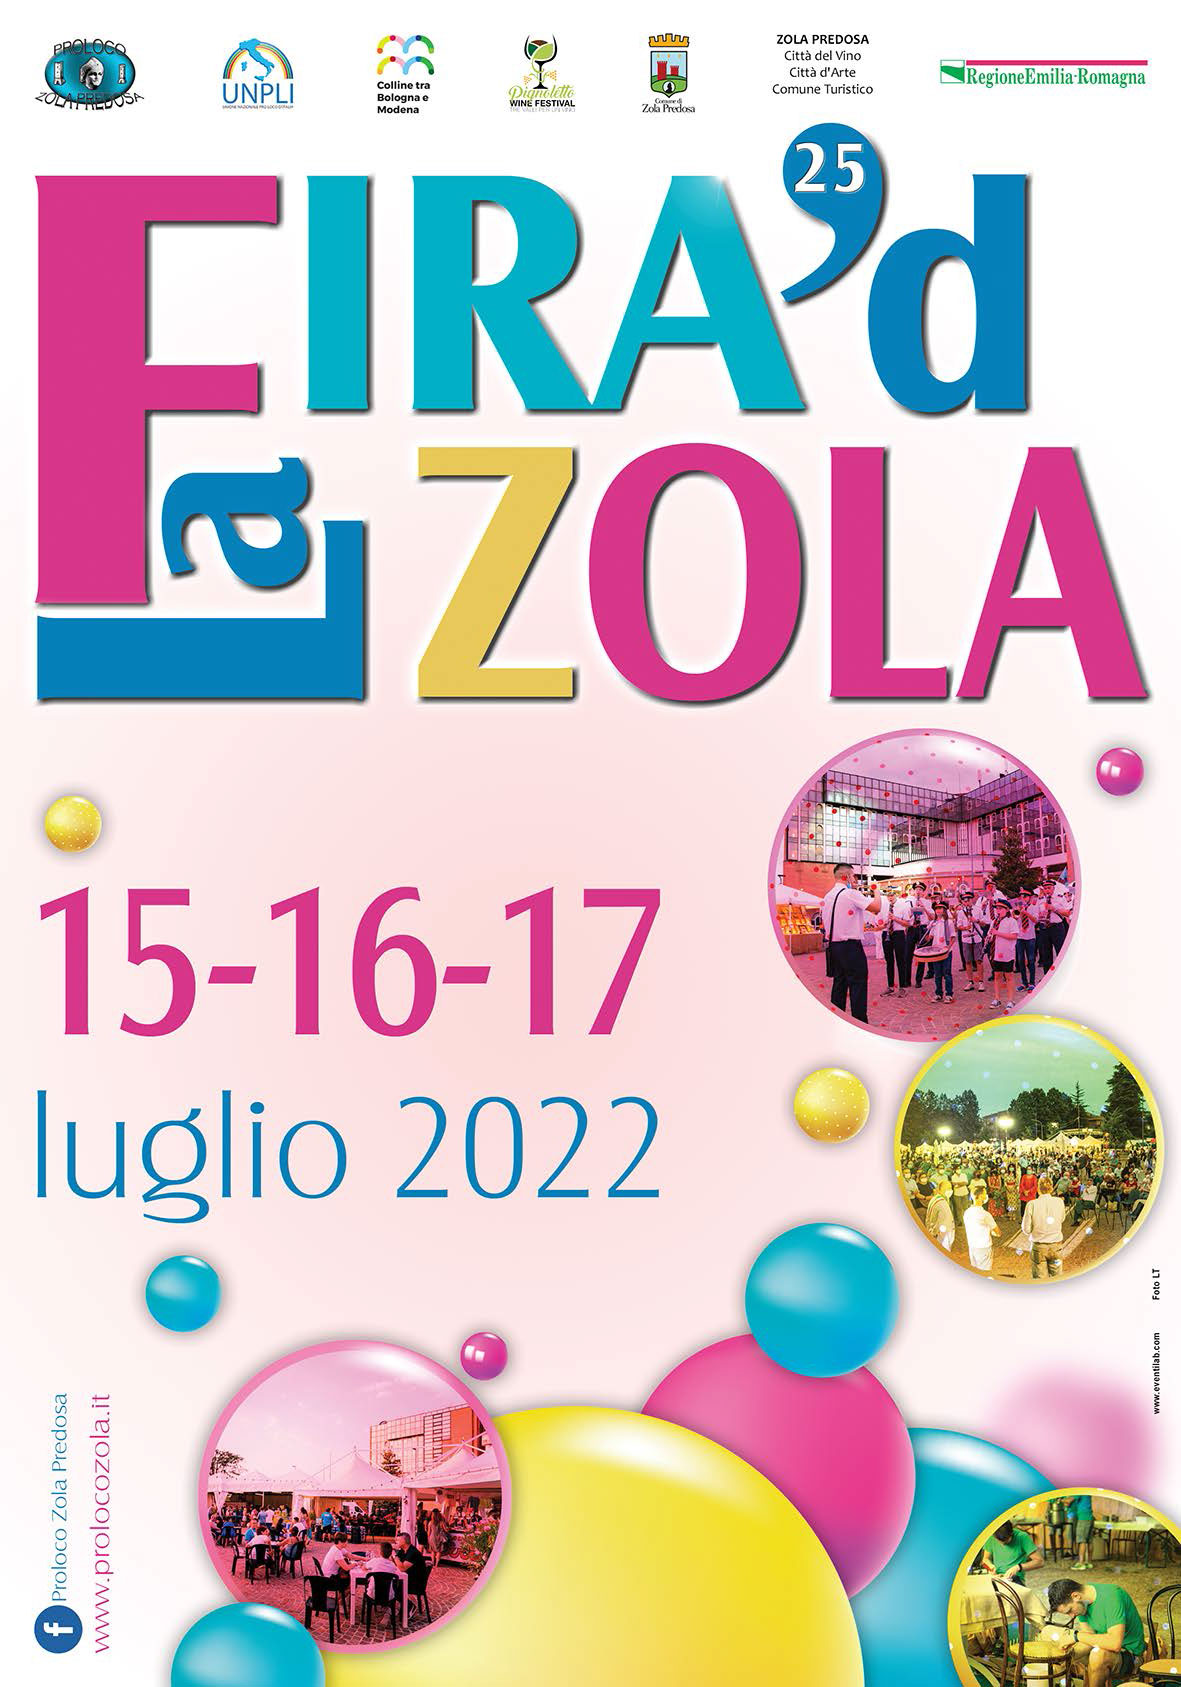 La Fira' d Zola 2022